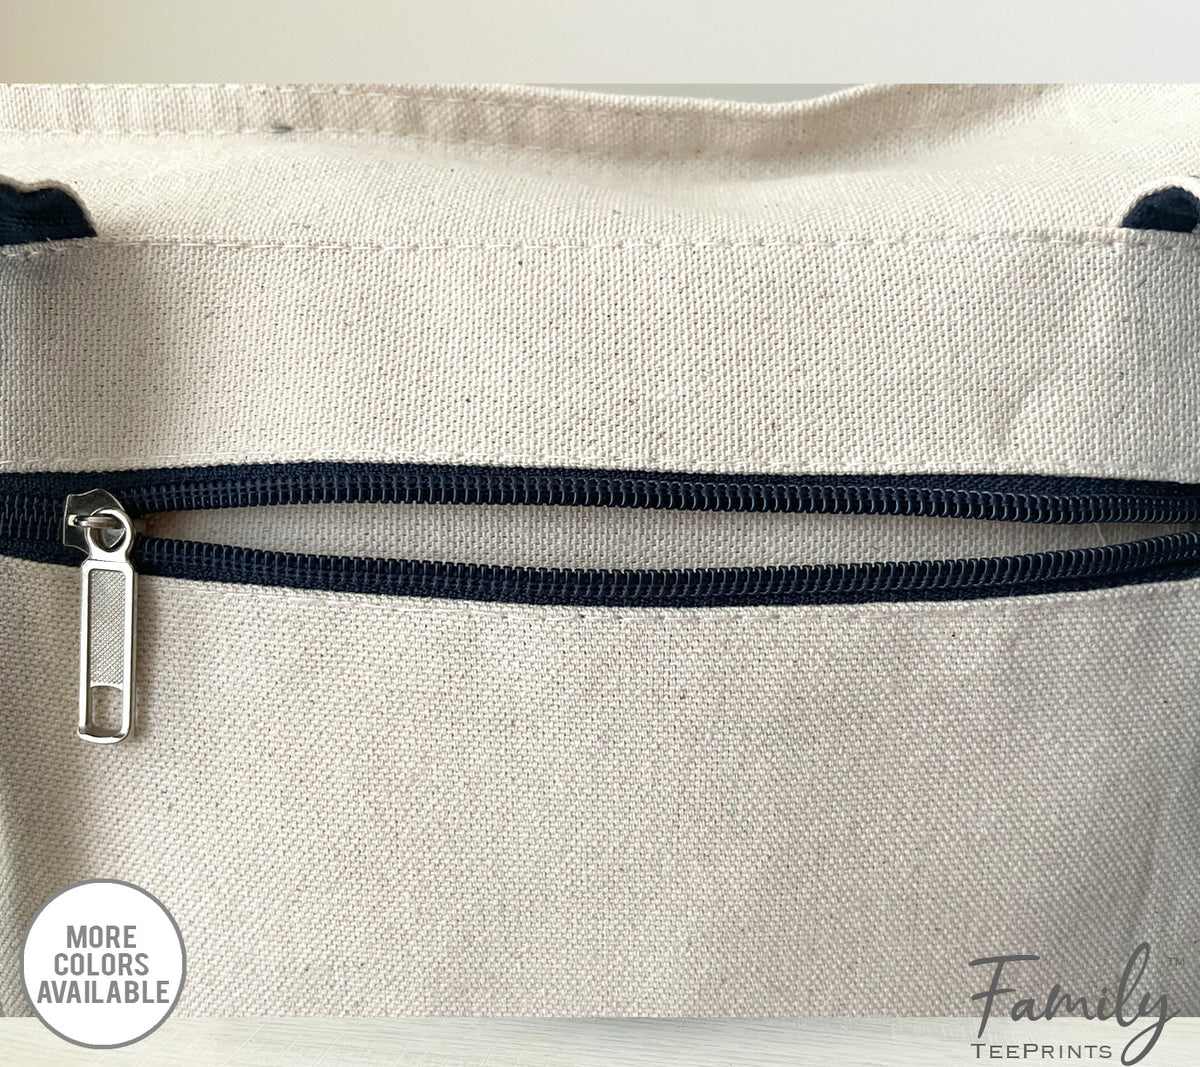 Grandma's Getaway Bag - Grandma Zippered Tote Bag - Two Tone Bag - Grandma Gift - familyteeprints